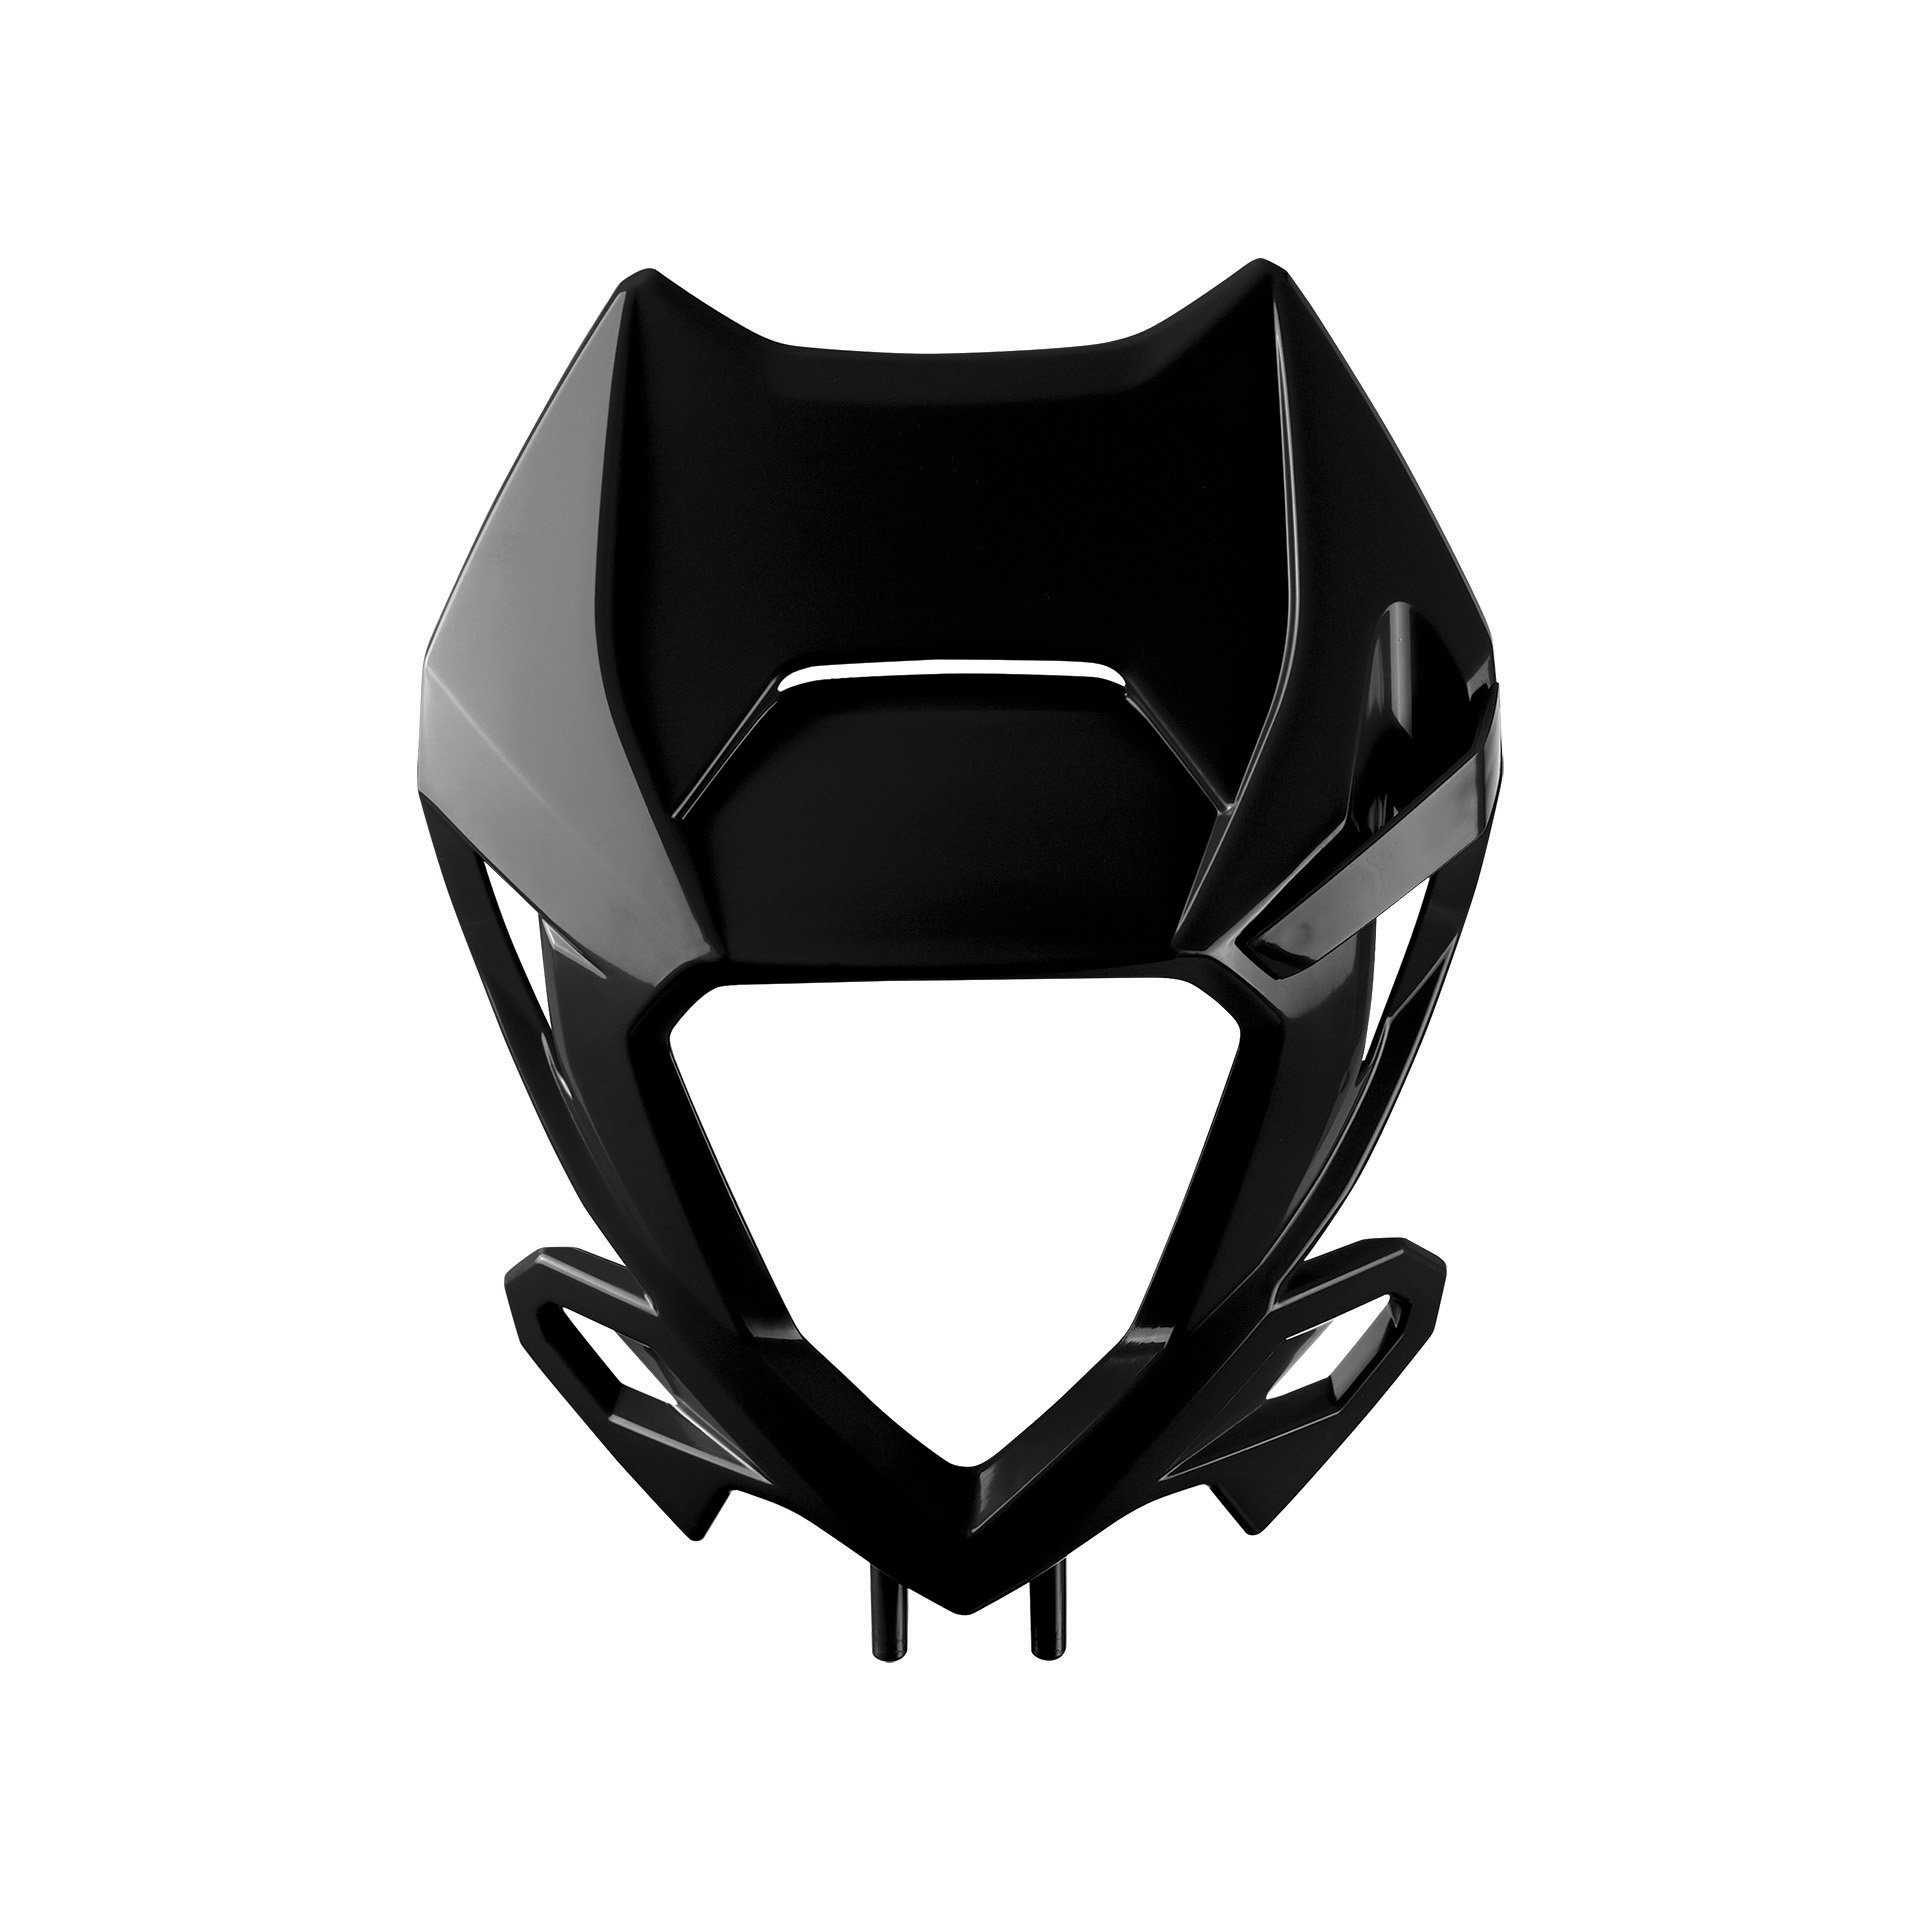 Obrázek produktu Headlight Mask POLISPORT 8667300002 černý